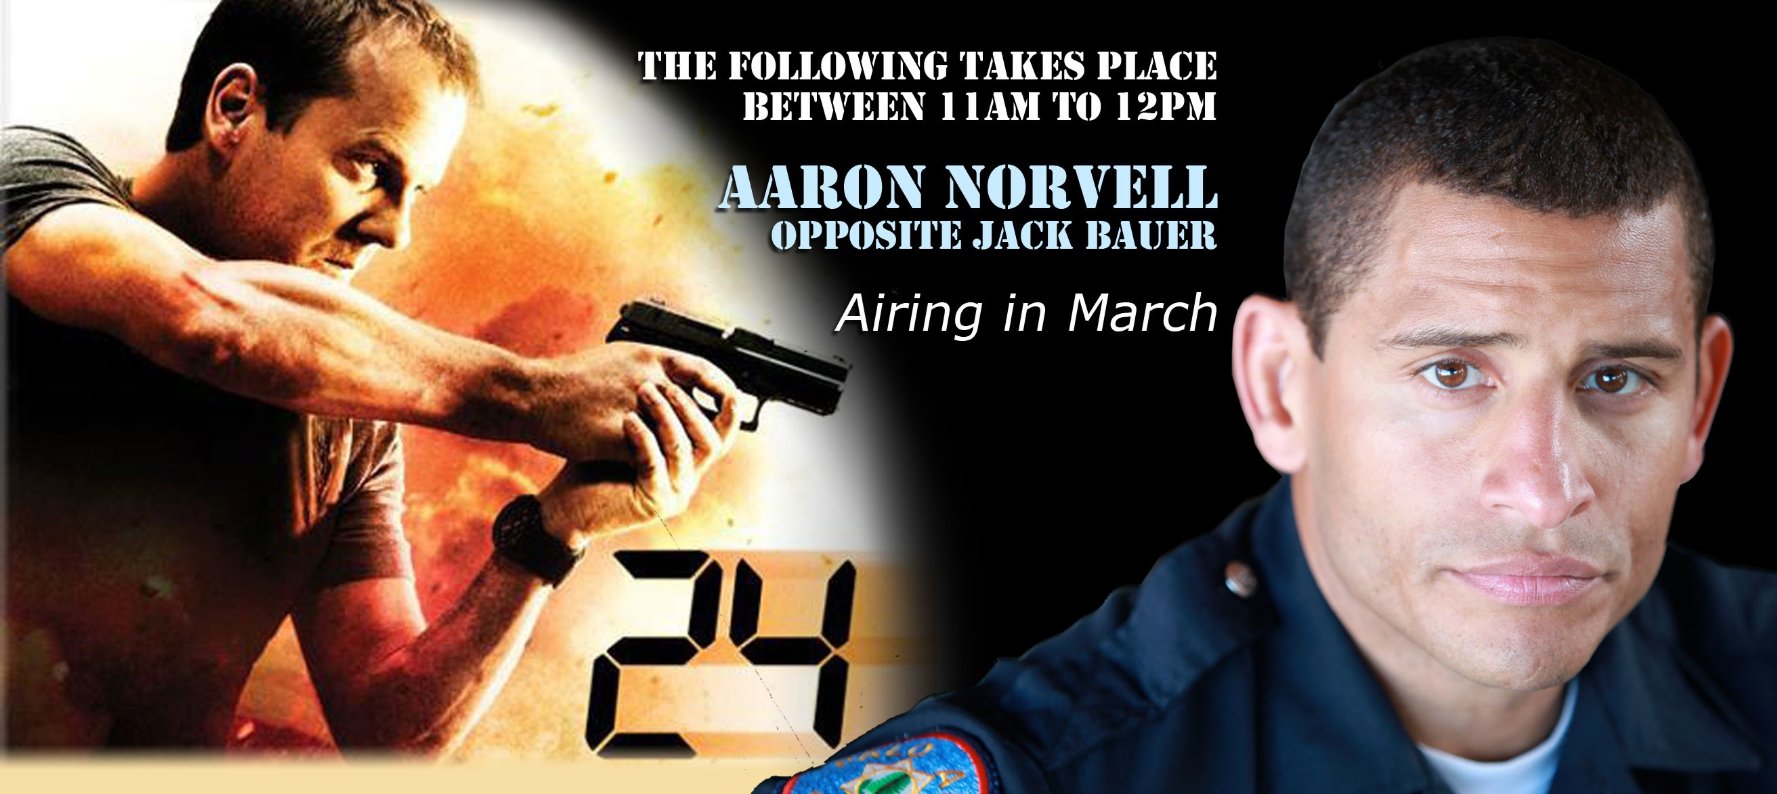 Aaron Norvell